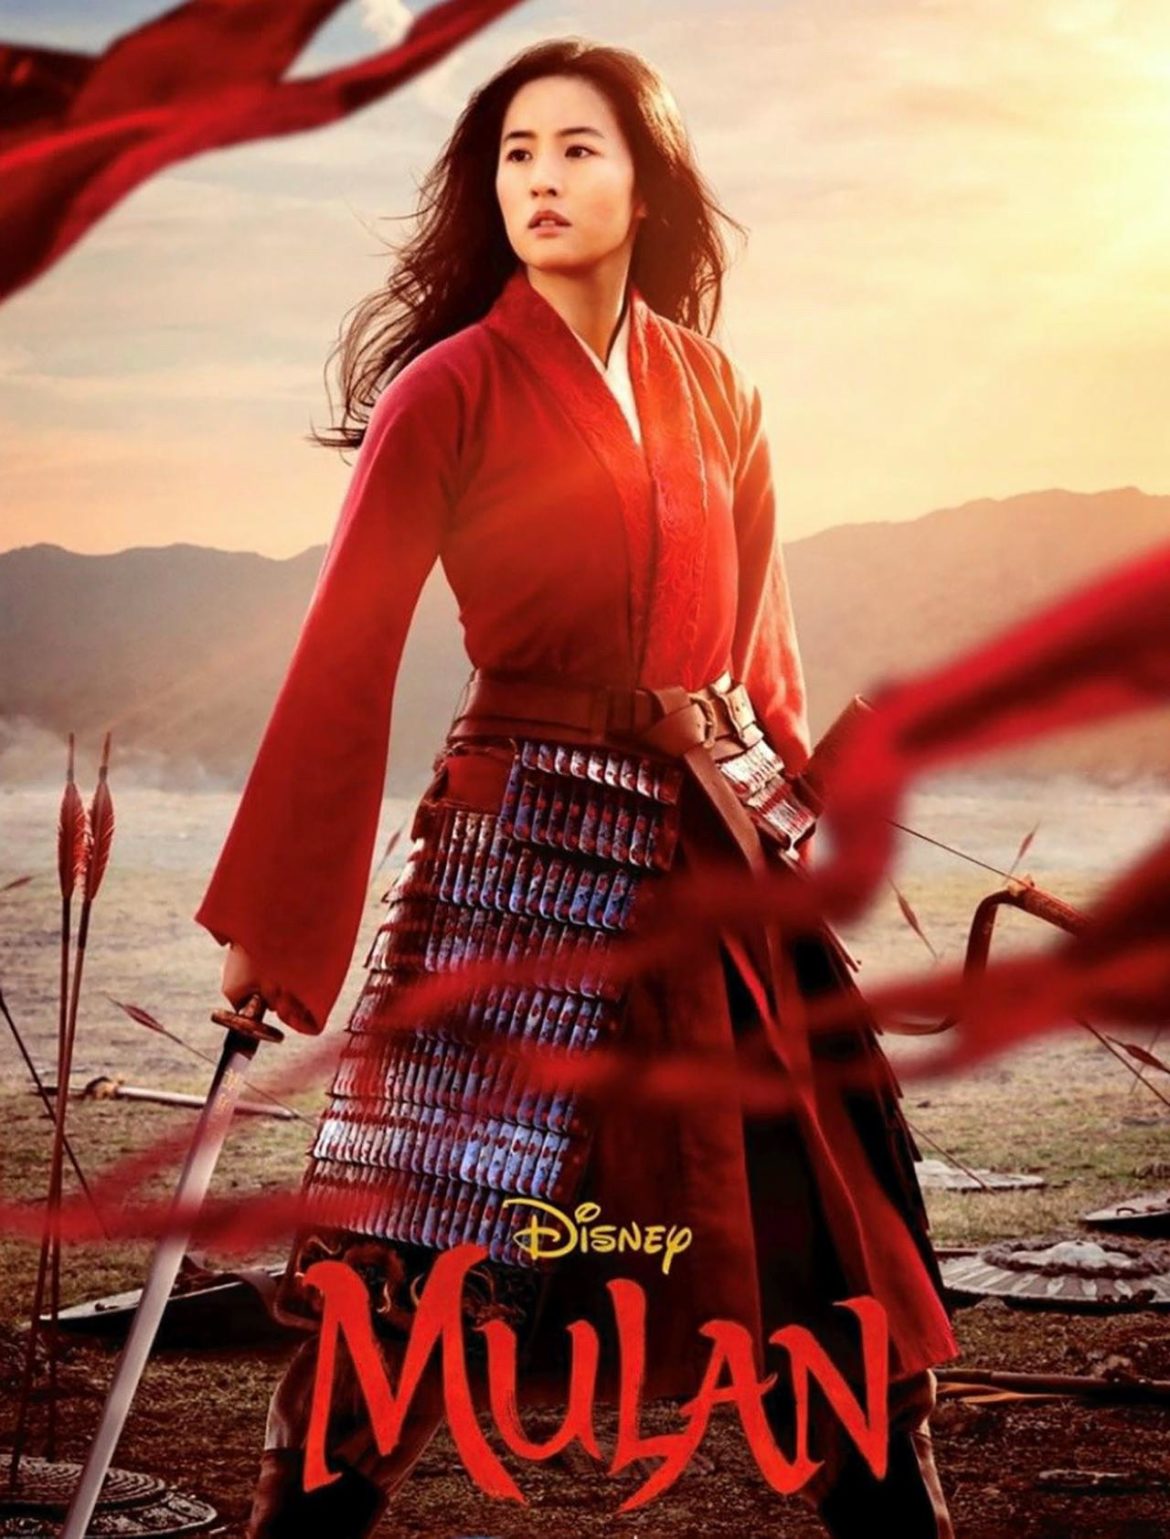 รีวิว หนัง Mulan หญิงแกร่งแดนมังกร ไม่ได้มีดีแค่ฉากต่อสู้สุดอลังการ!